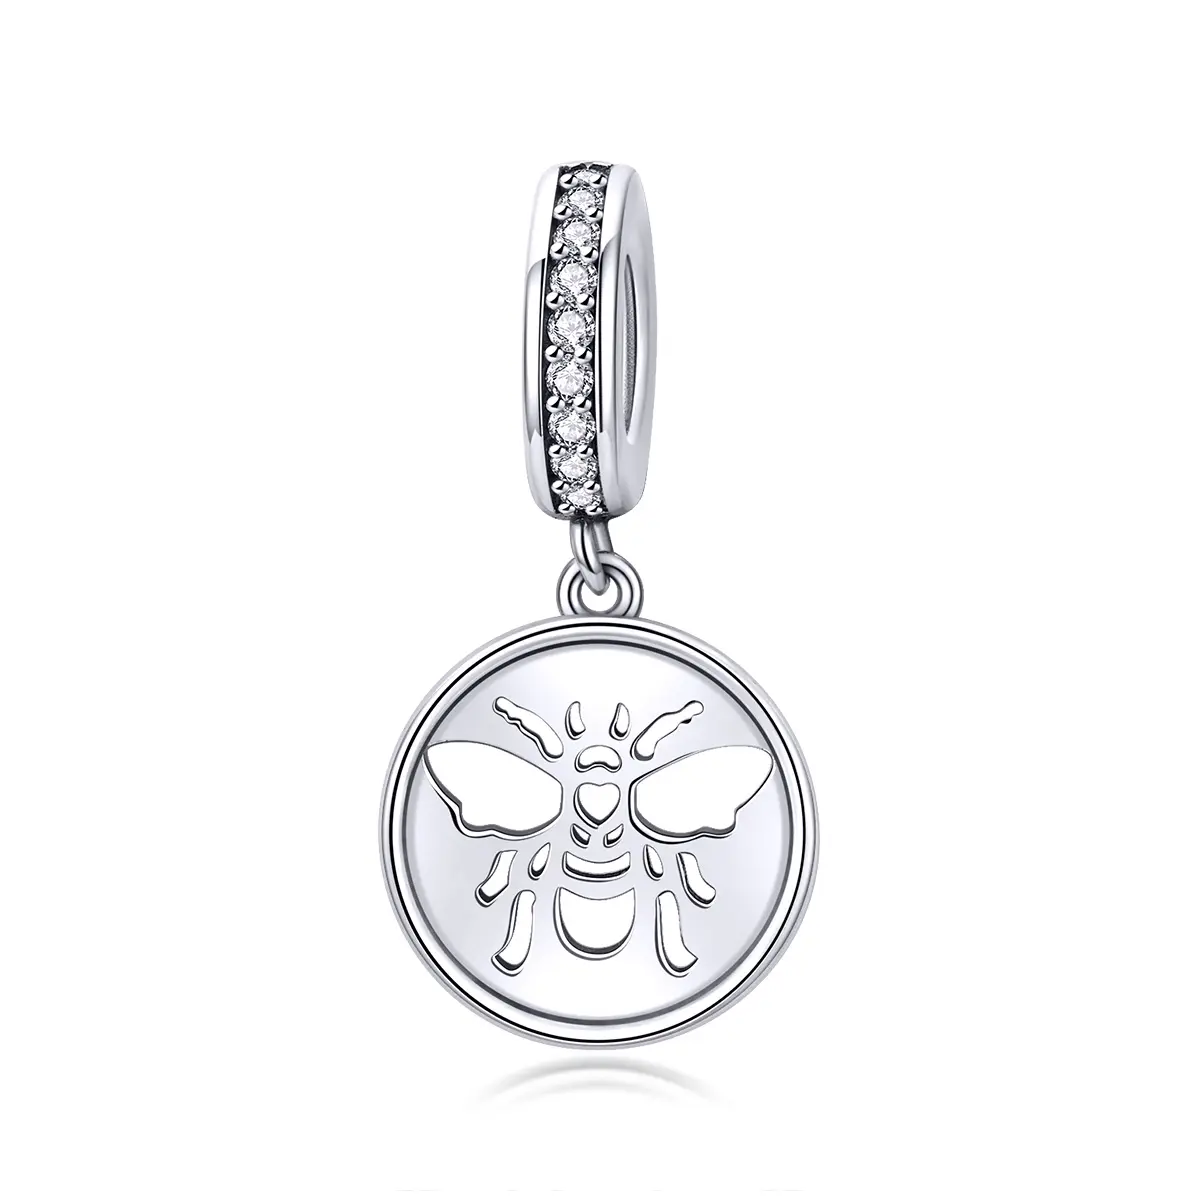 Nouveau évider l'abeille PIÈCES spot BSC203 s925 pendentif contracté mode bricolage bijoux accessoires